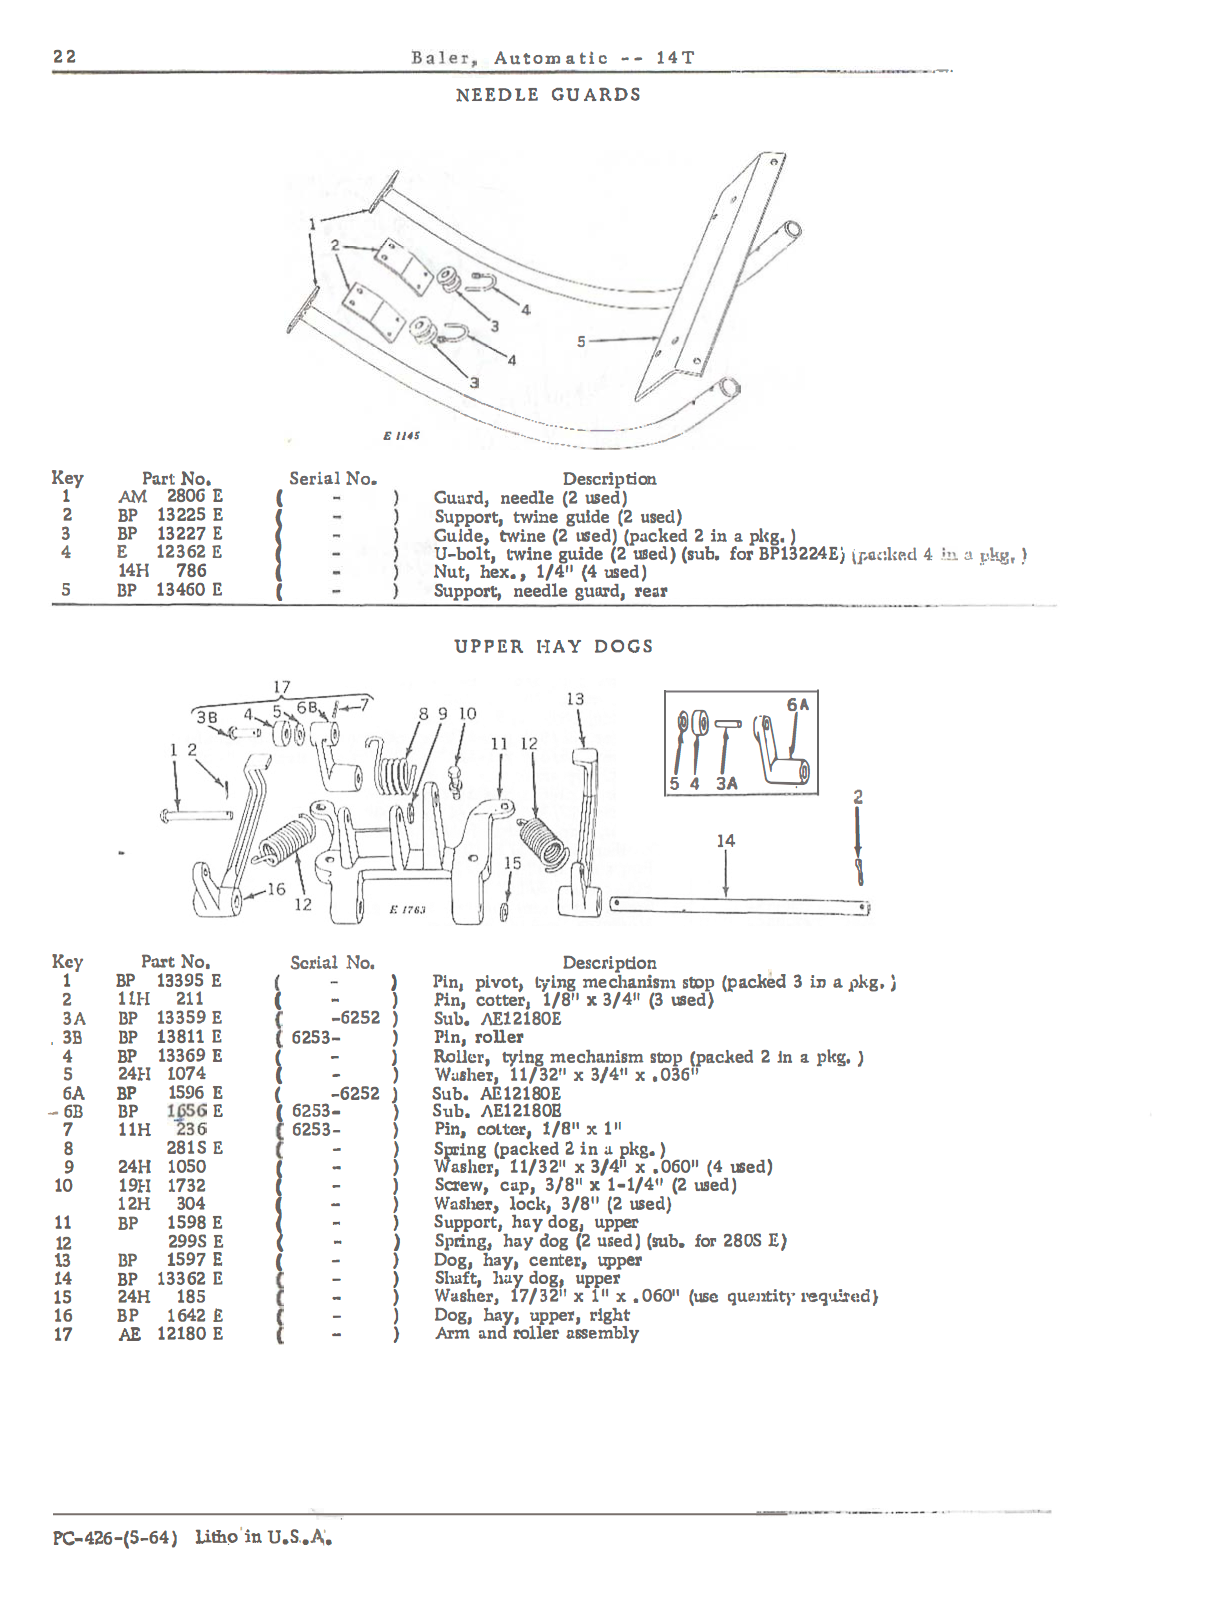 John Deere No. 14T Automatic Pickup Baler - Parts Catalog - Ag Manuals - A Provider of Digital Farm Manuals - 2